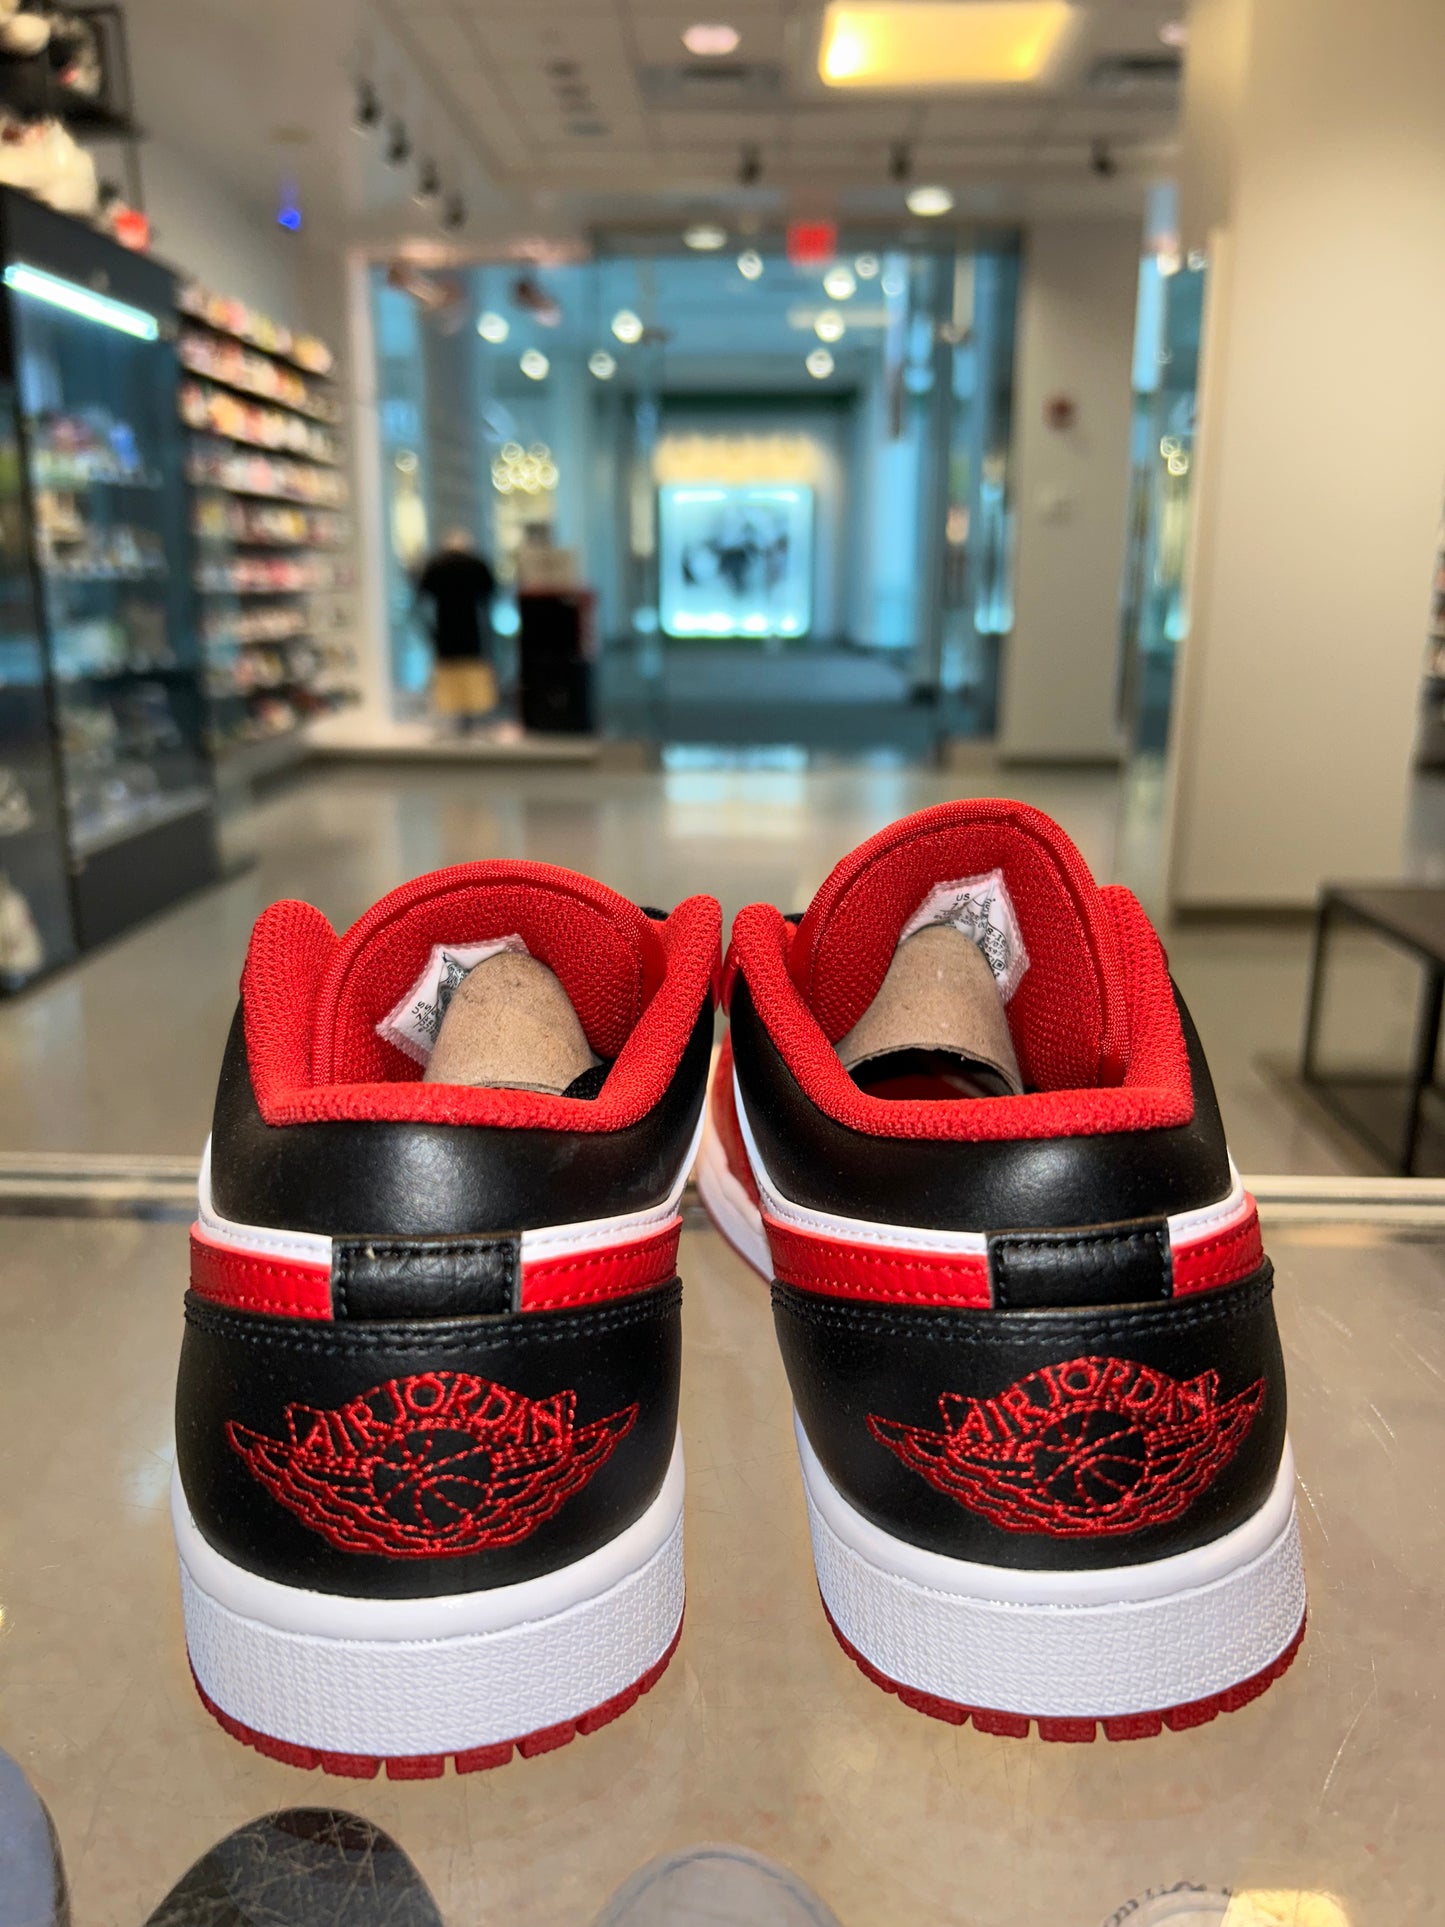 Size 7.5 Air Jordan 1 Low “Bulls” Brand New (Mall)